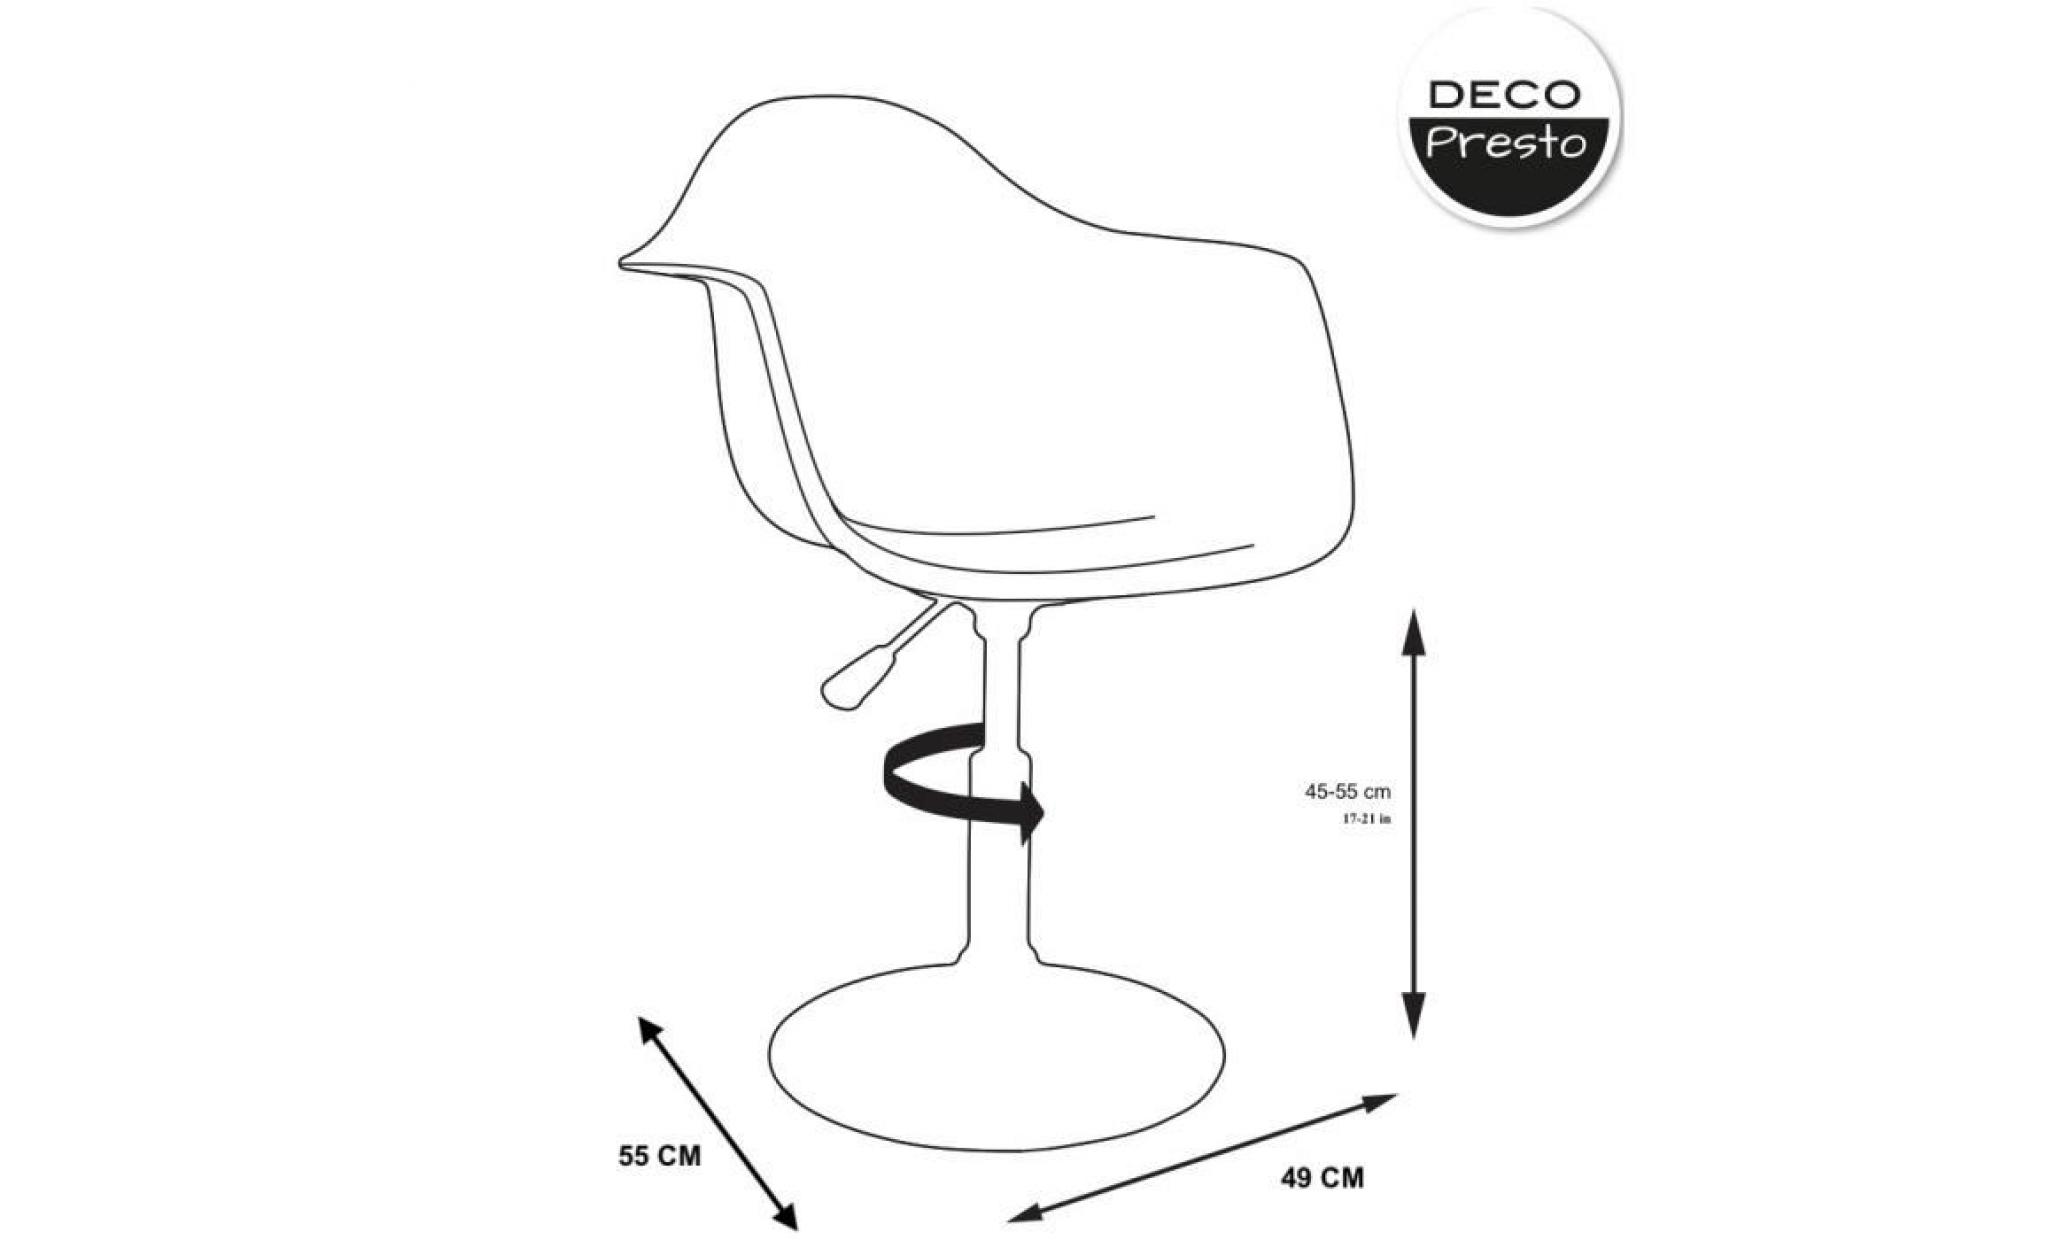 1 x fauteuil design  scandinave reglable pivotant  bleu ocean pieds: acier chrome decopresto dp dai bo 1 pas cher